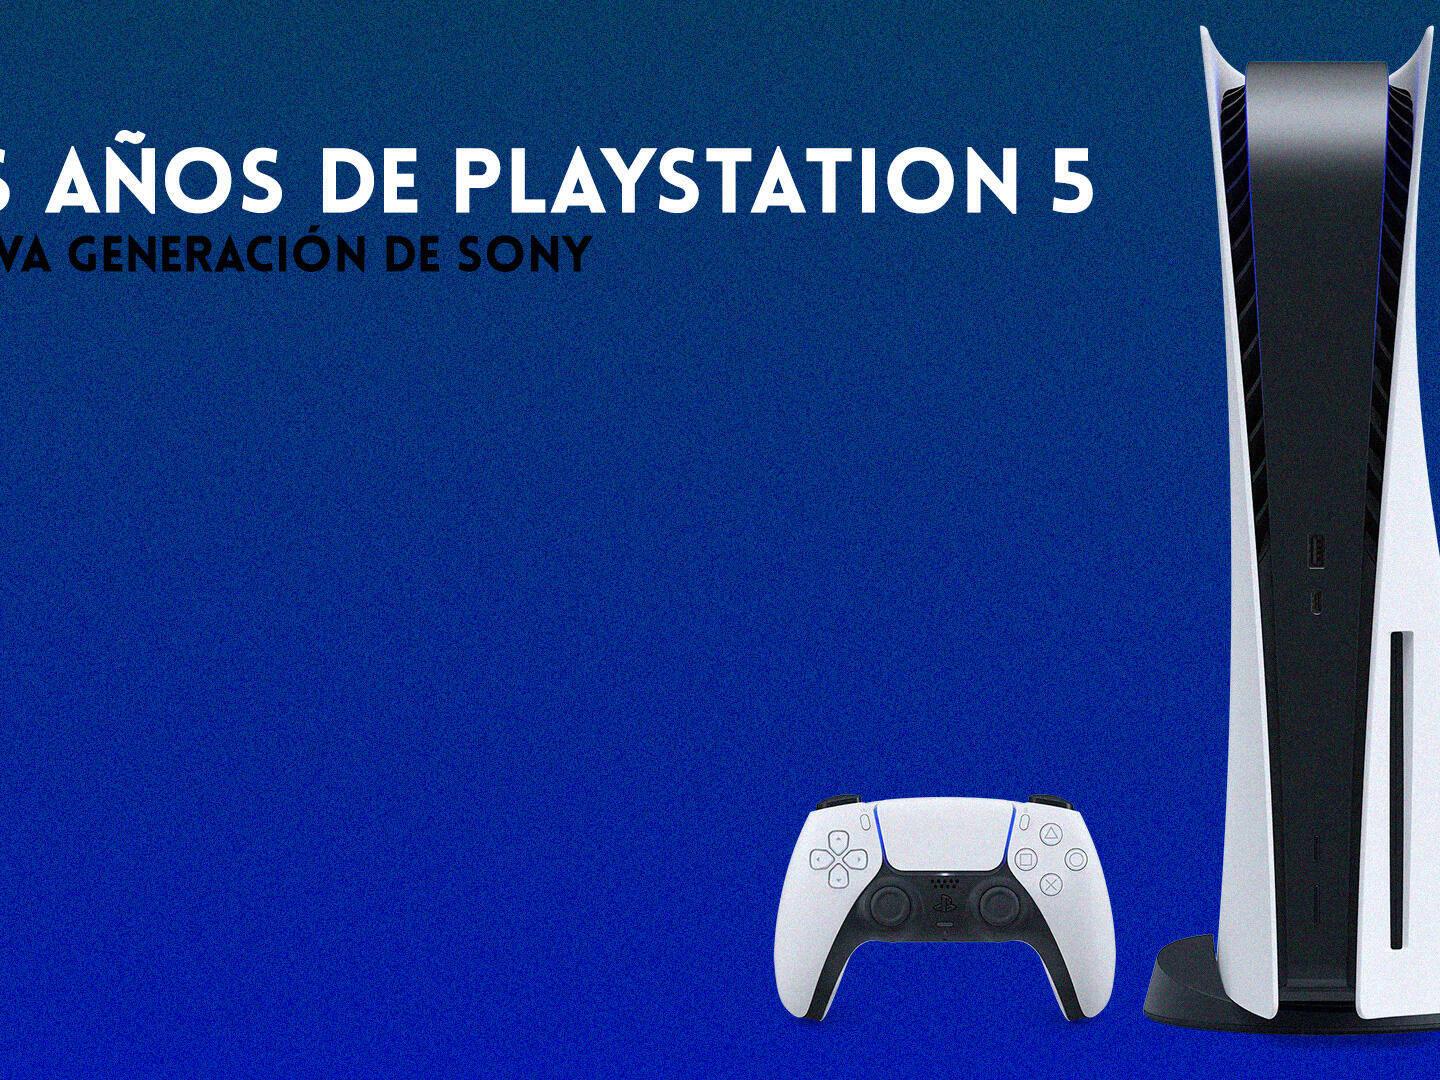 Dos años de PS5: ¿Cómo le ha ido a la nueva generación de Sony?